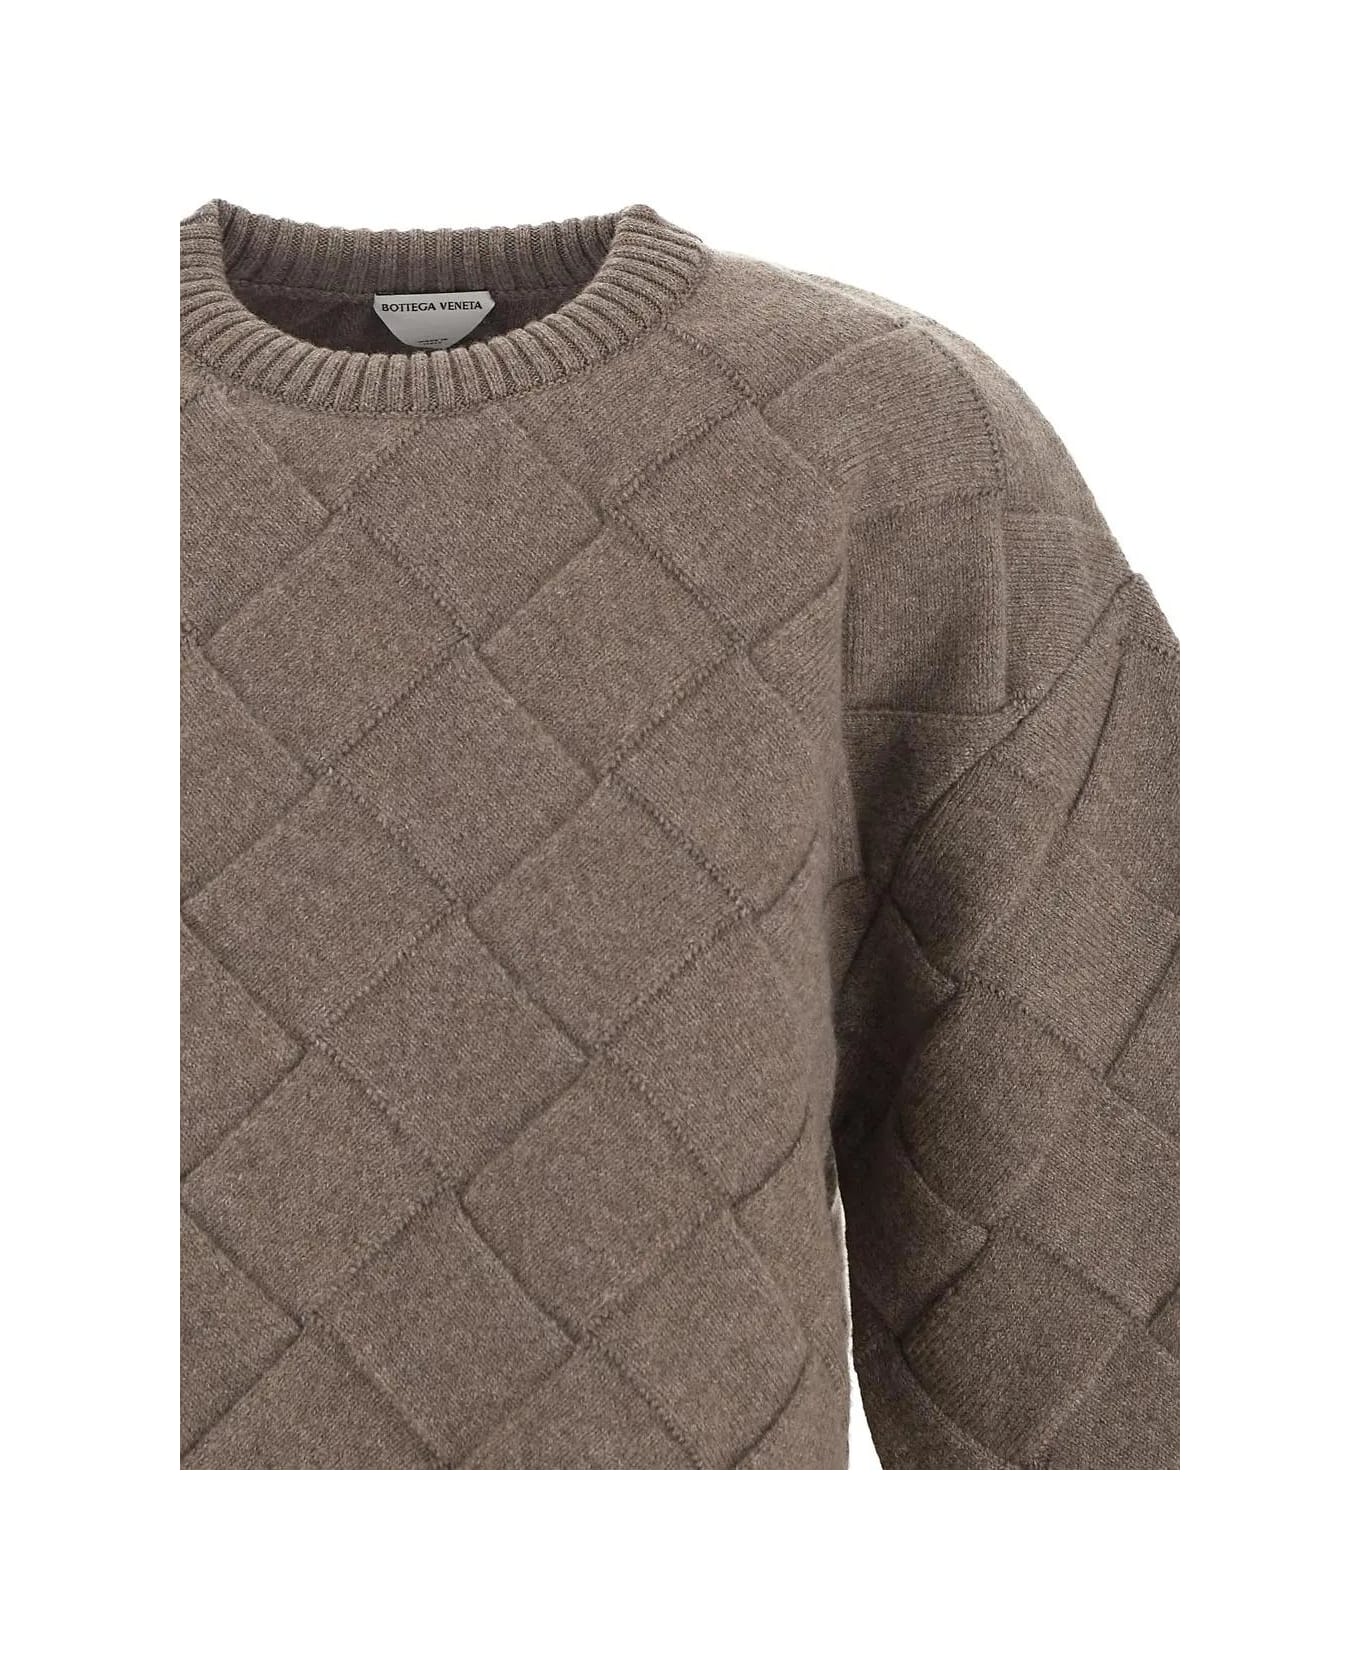 Bottega Veneta Weave Pattern Sweater - Nude & Neutrals